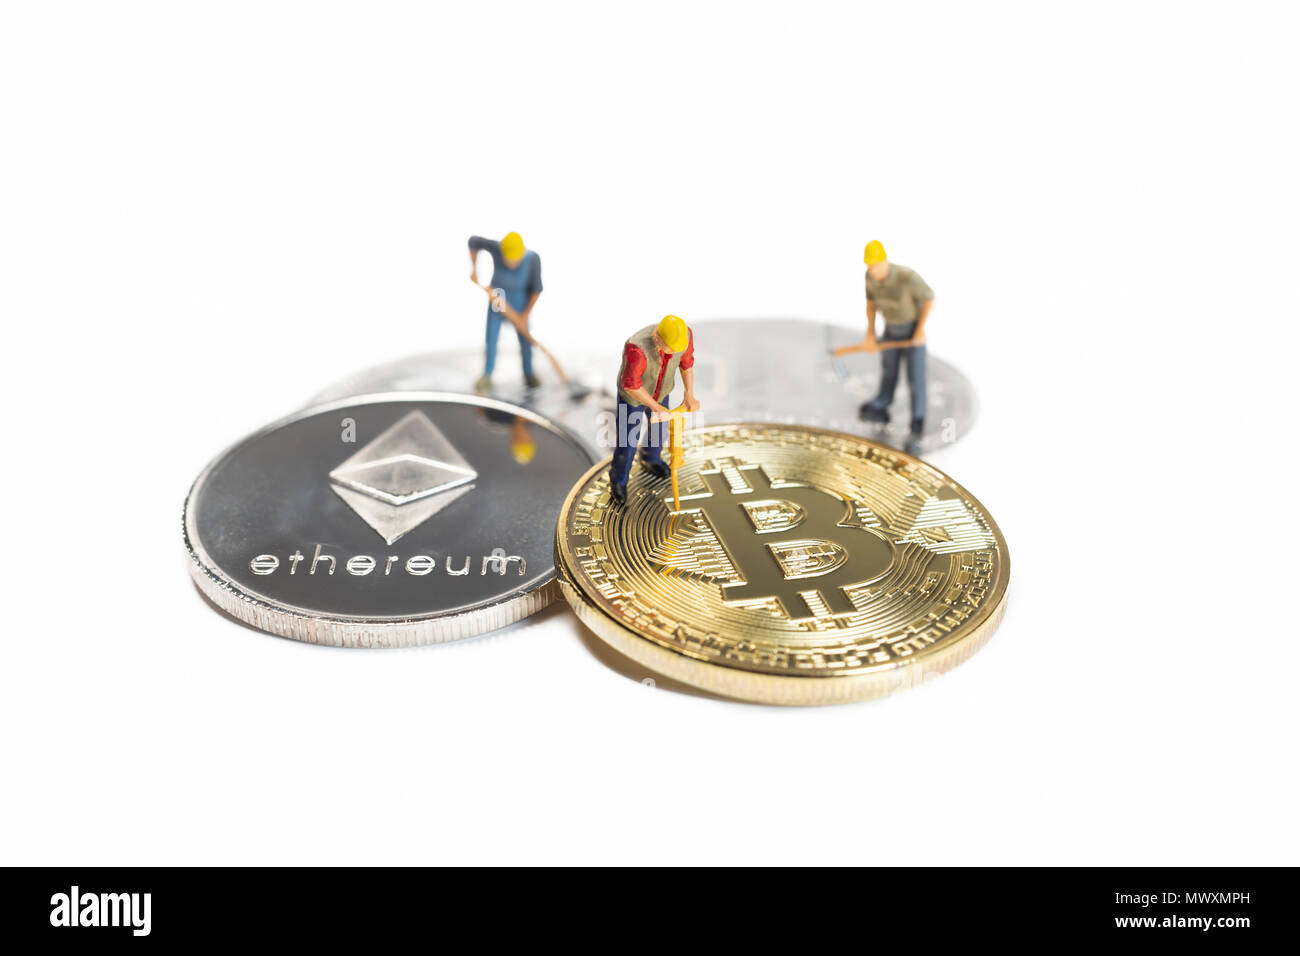 Lavoratori in miniatura Mining vari Cryptocurrencies su una superficie bianca Foto Stock